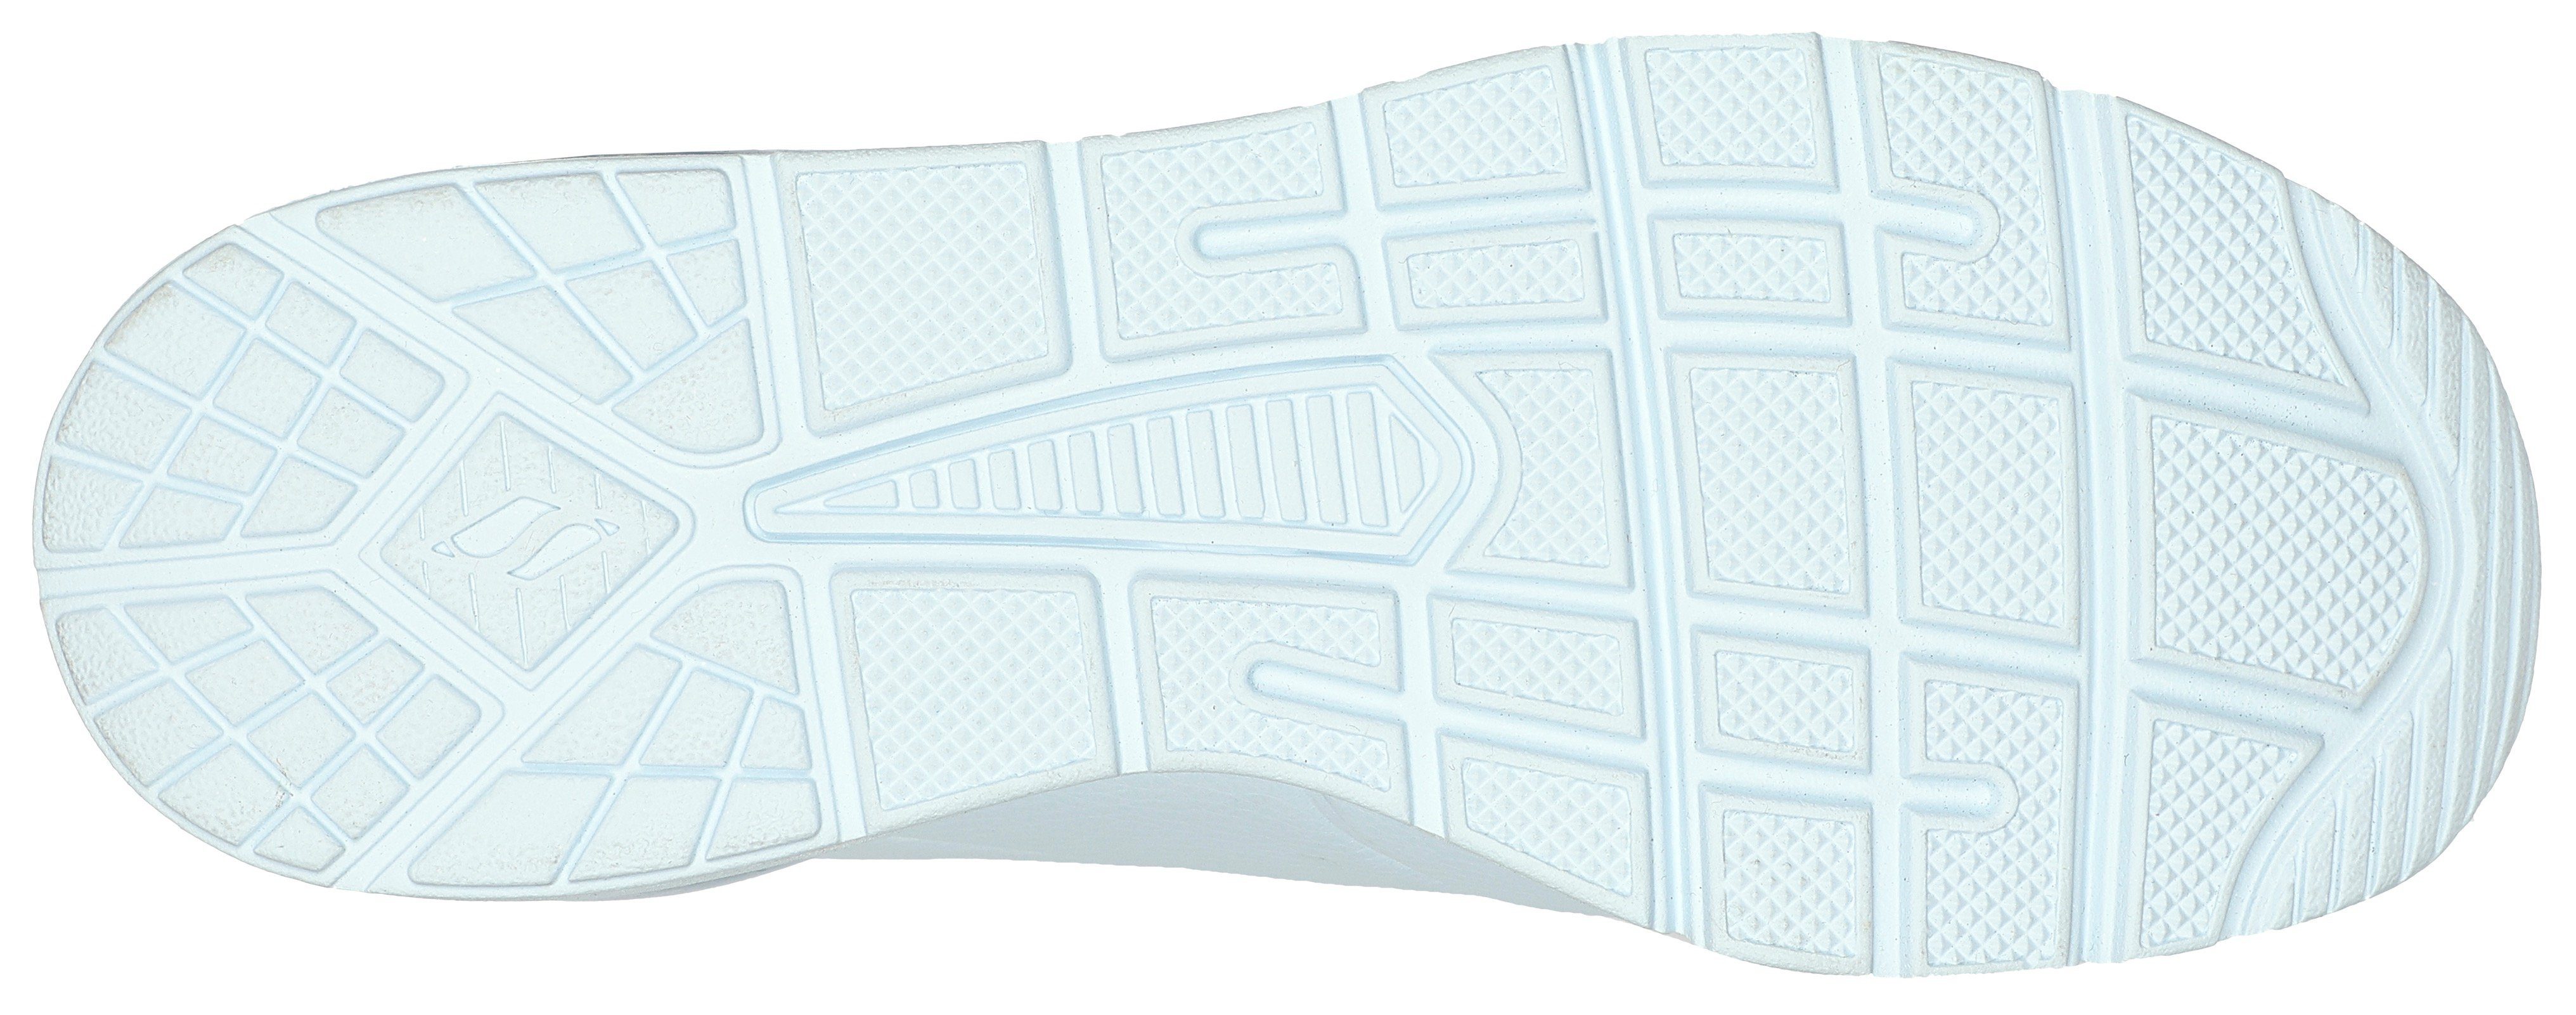 Skechers Pastellfarben hellblau UNO Sneaker 2 in zarten